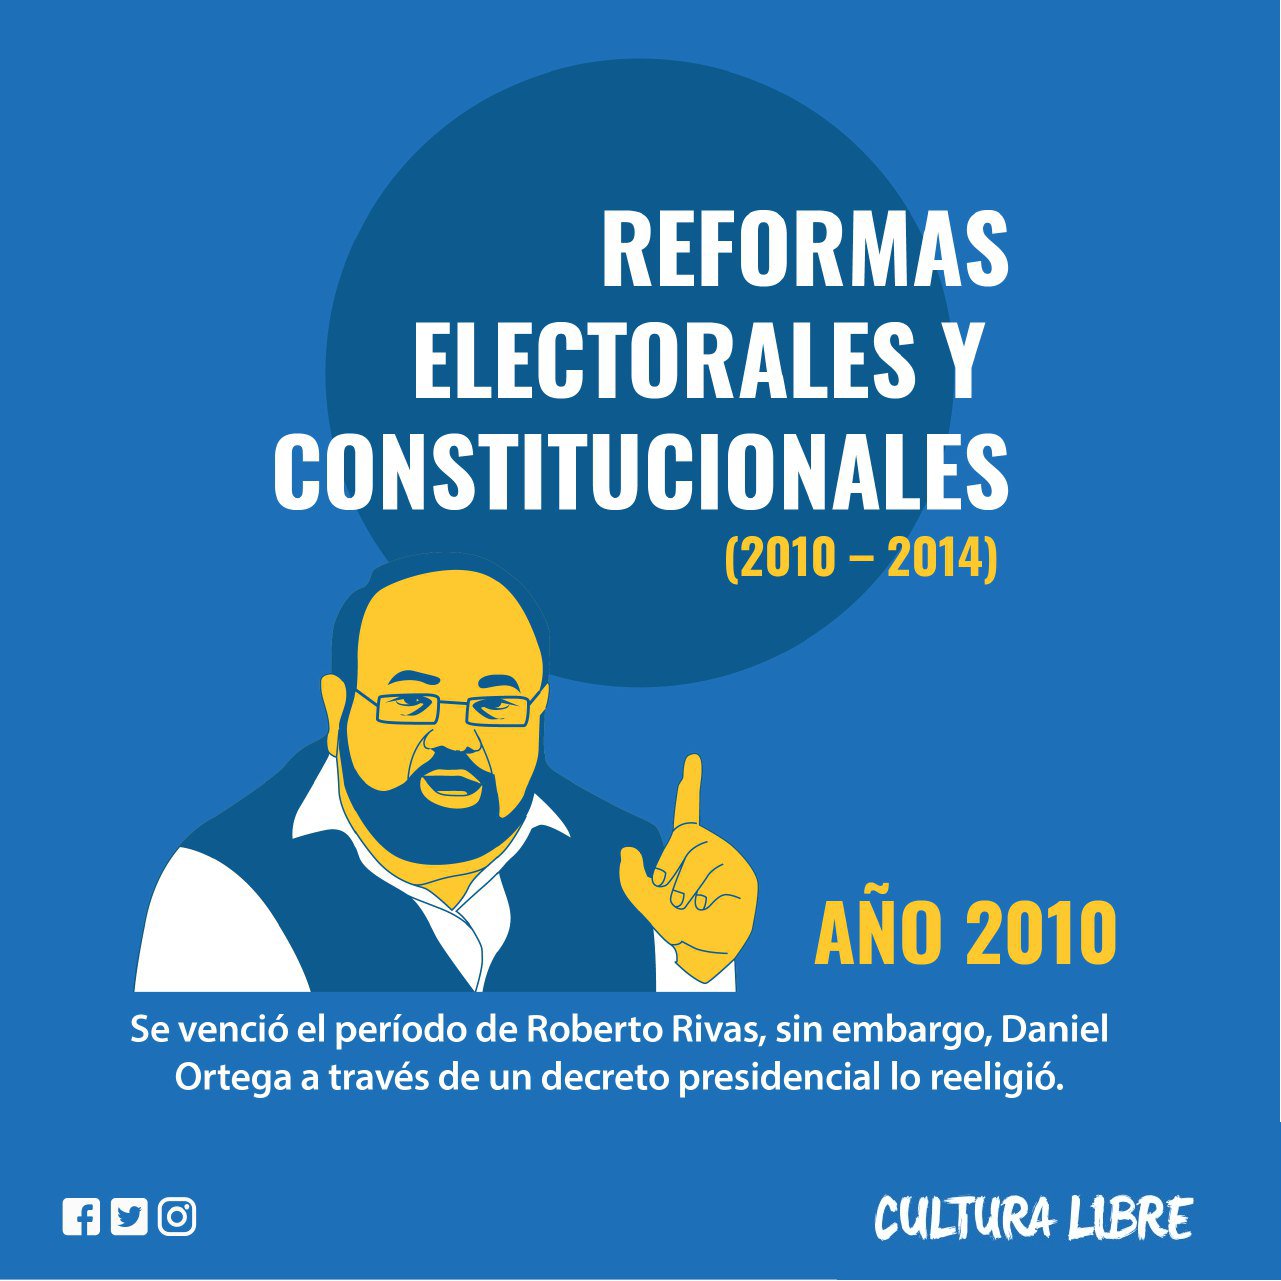 Reformas electorales y constitucionales entre 2010 y 2014